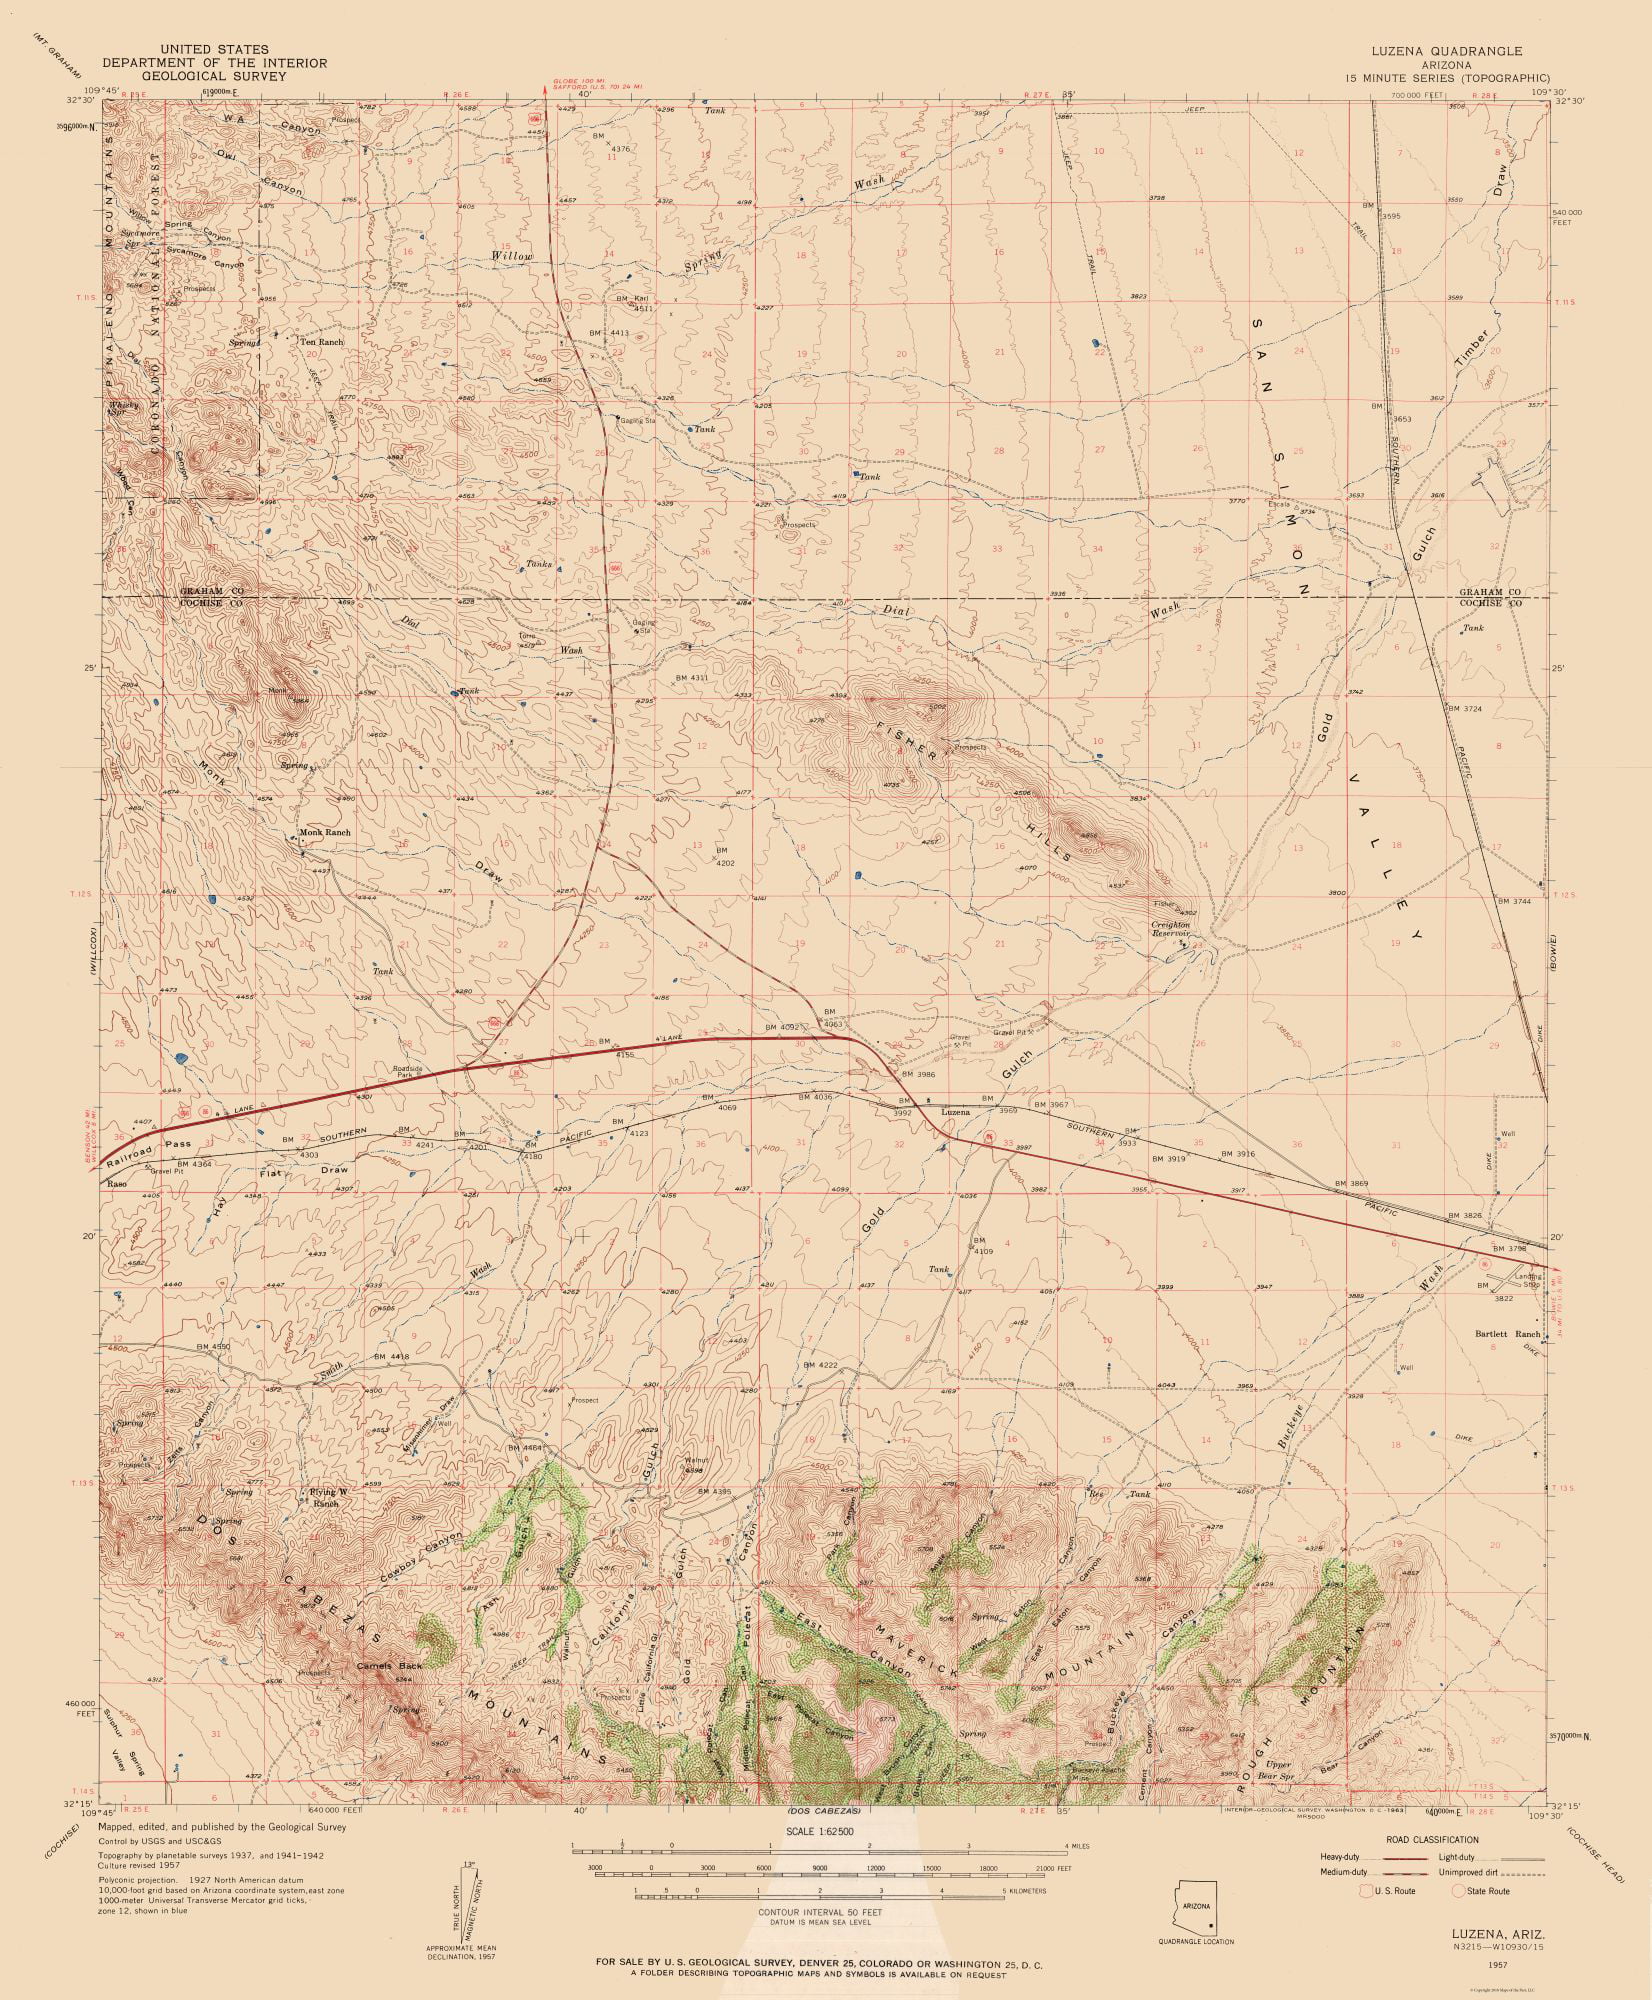 USGS 1962-23 x 28.58 Supai Arizona Quad 